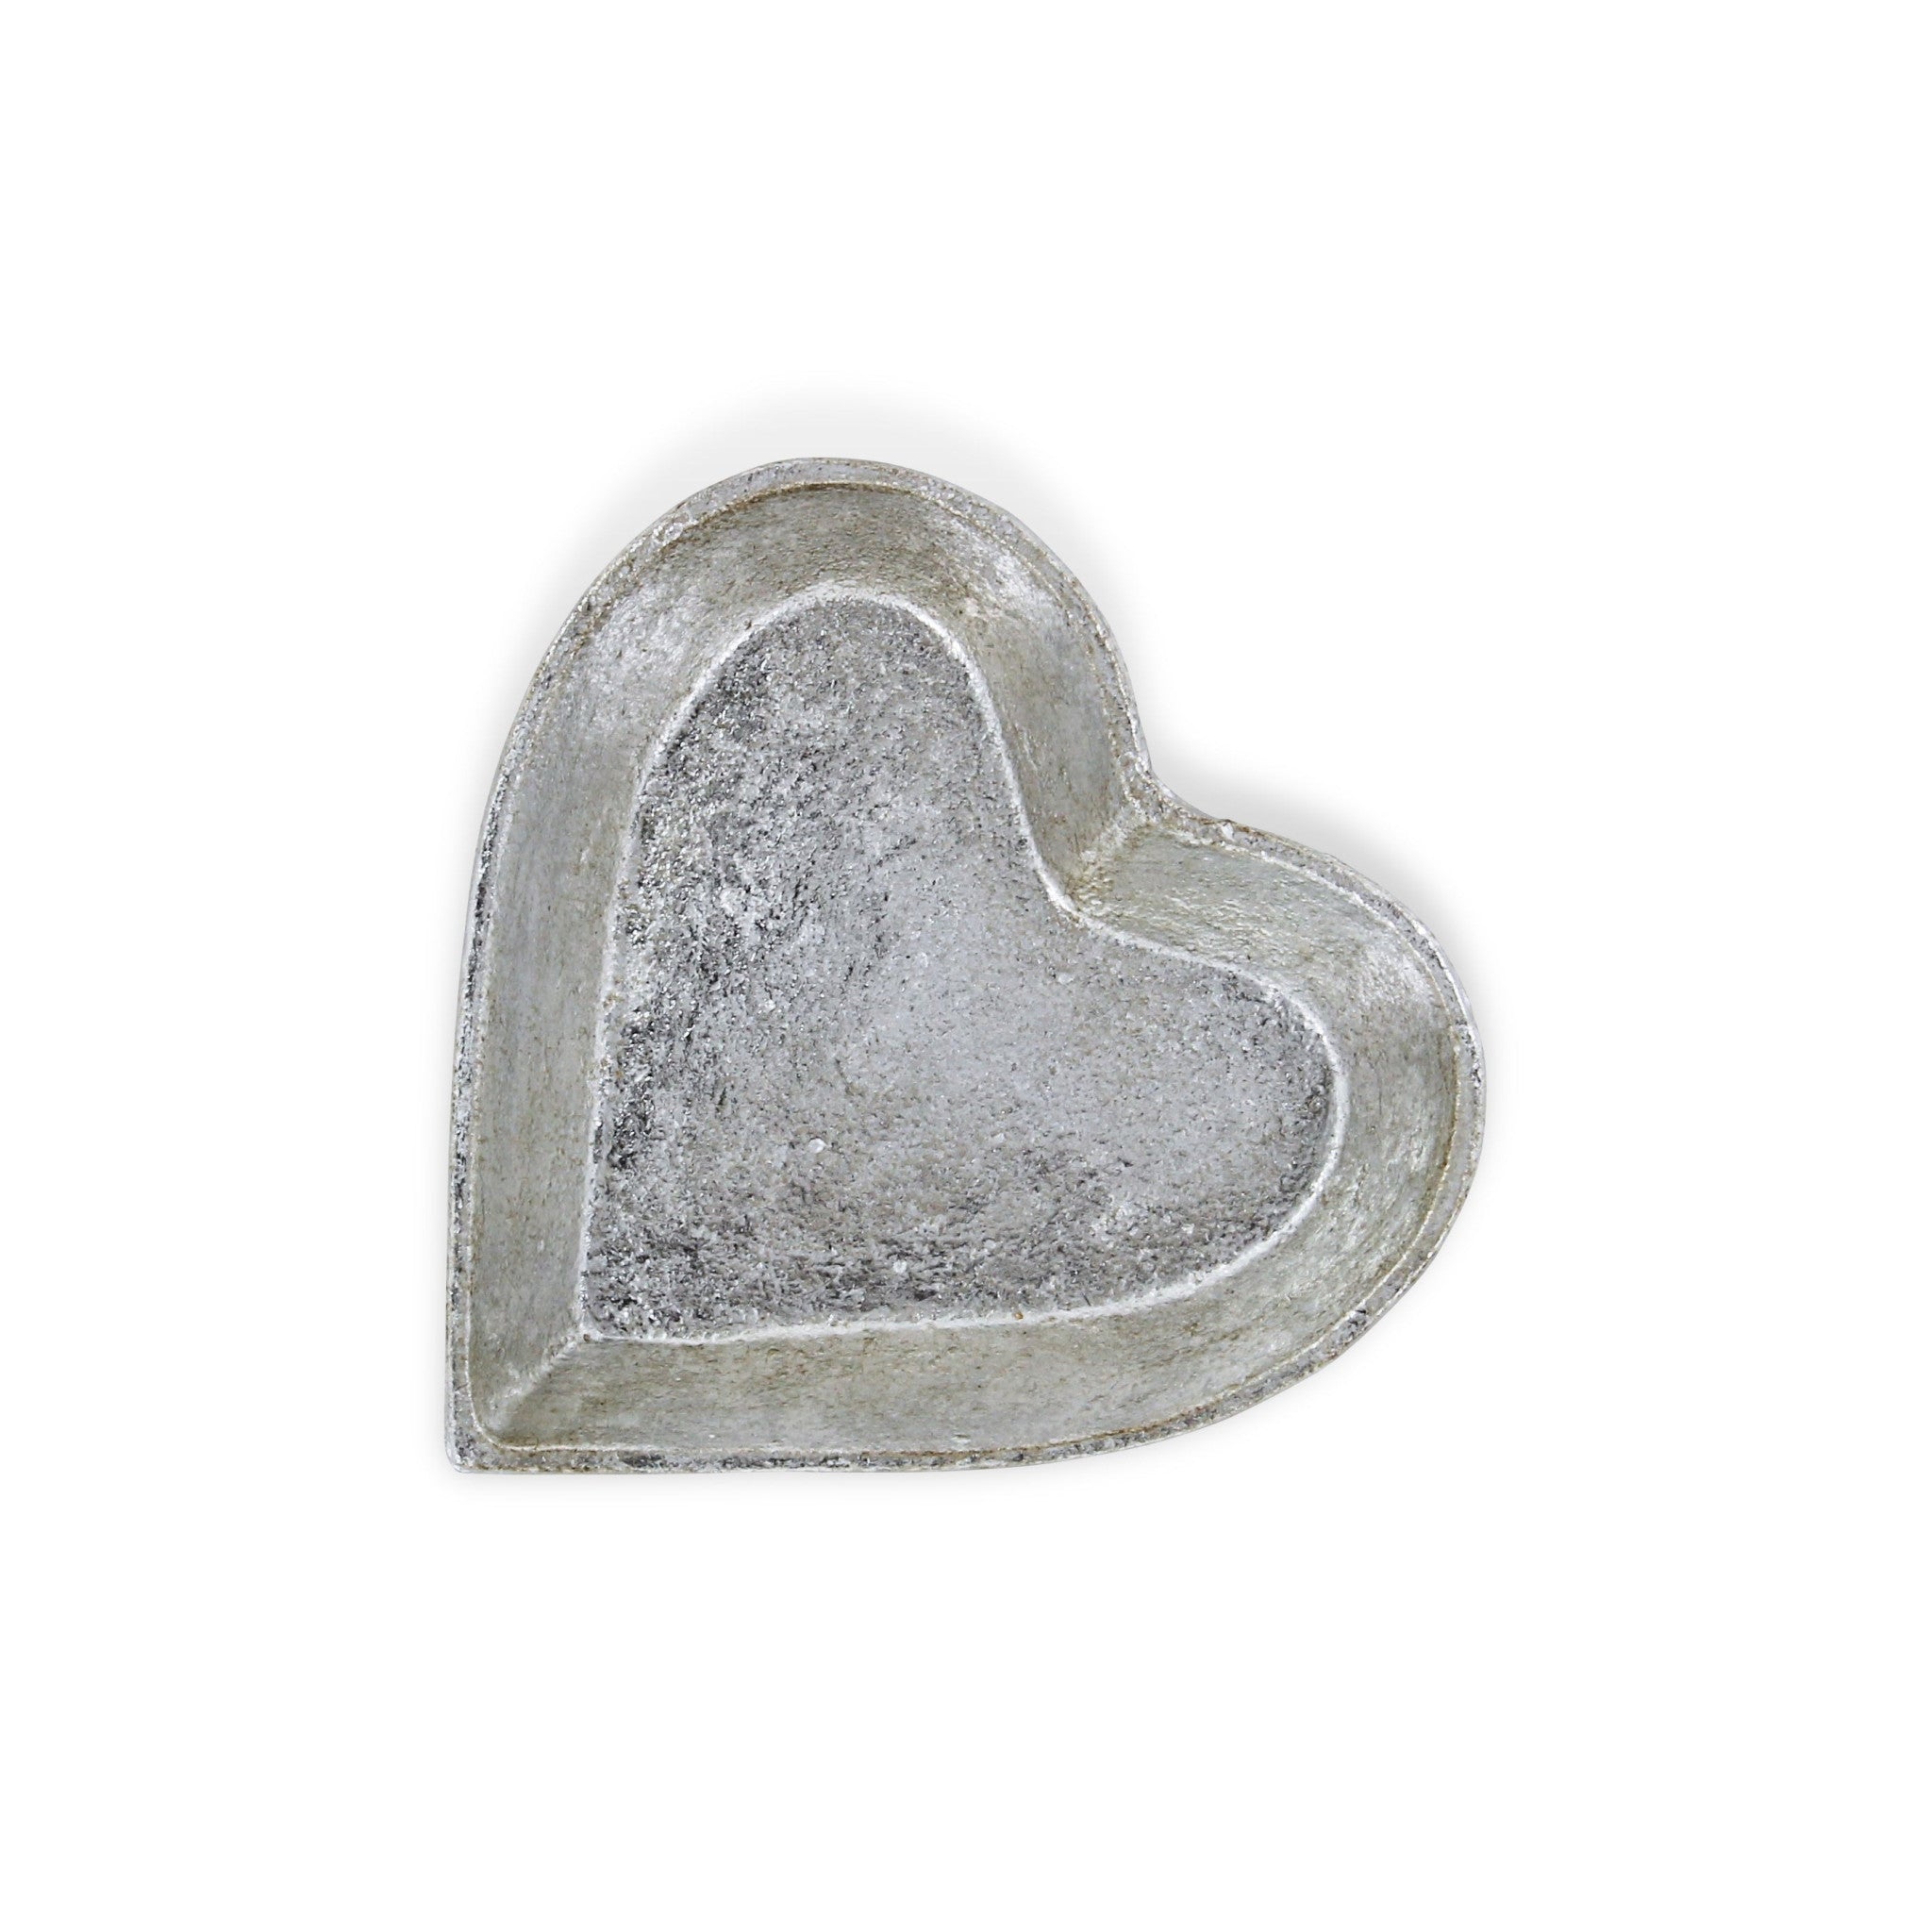 7" Silver Heart Cast Iron Handmade Vanity Tray